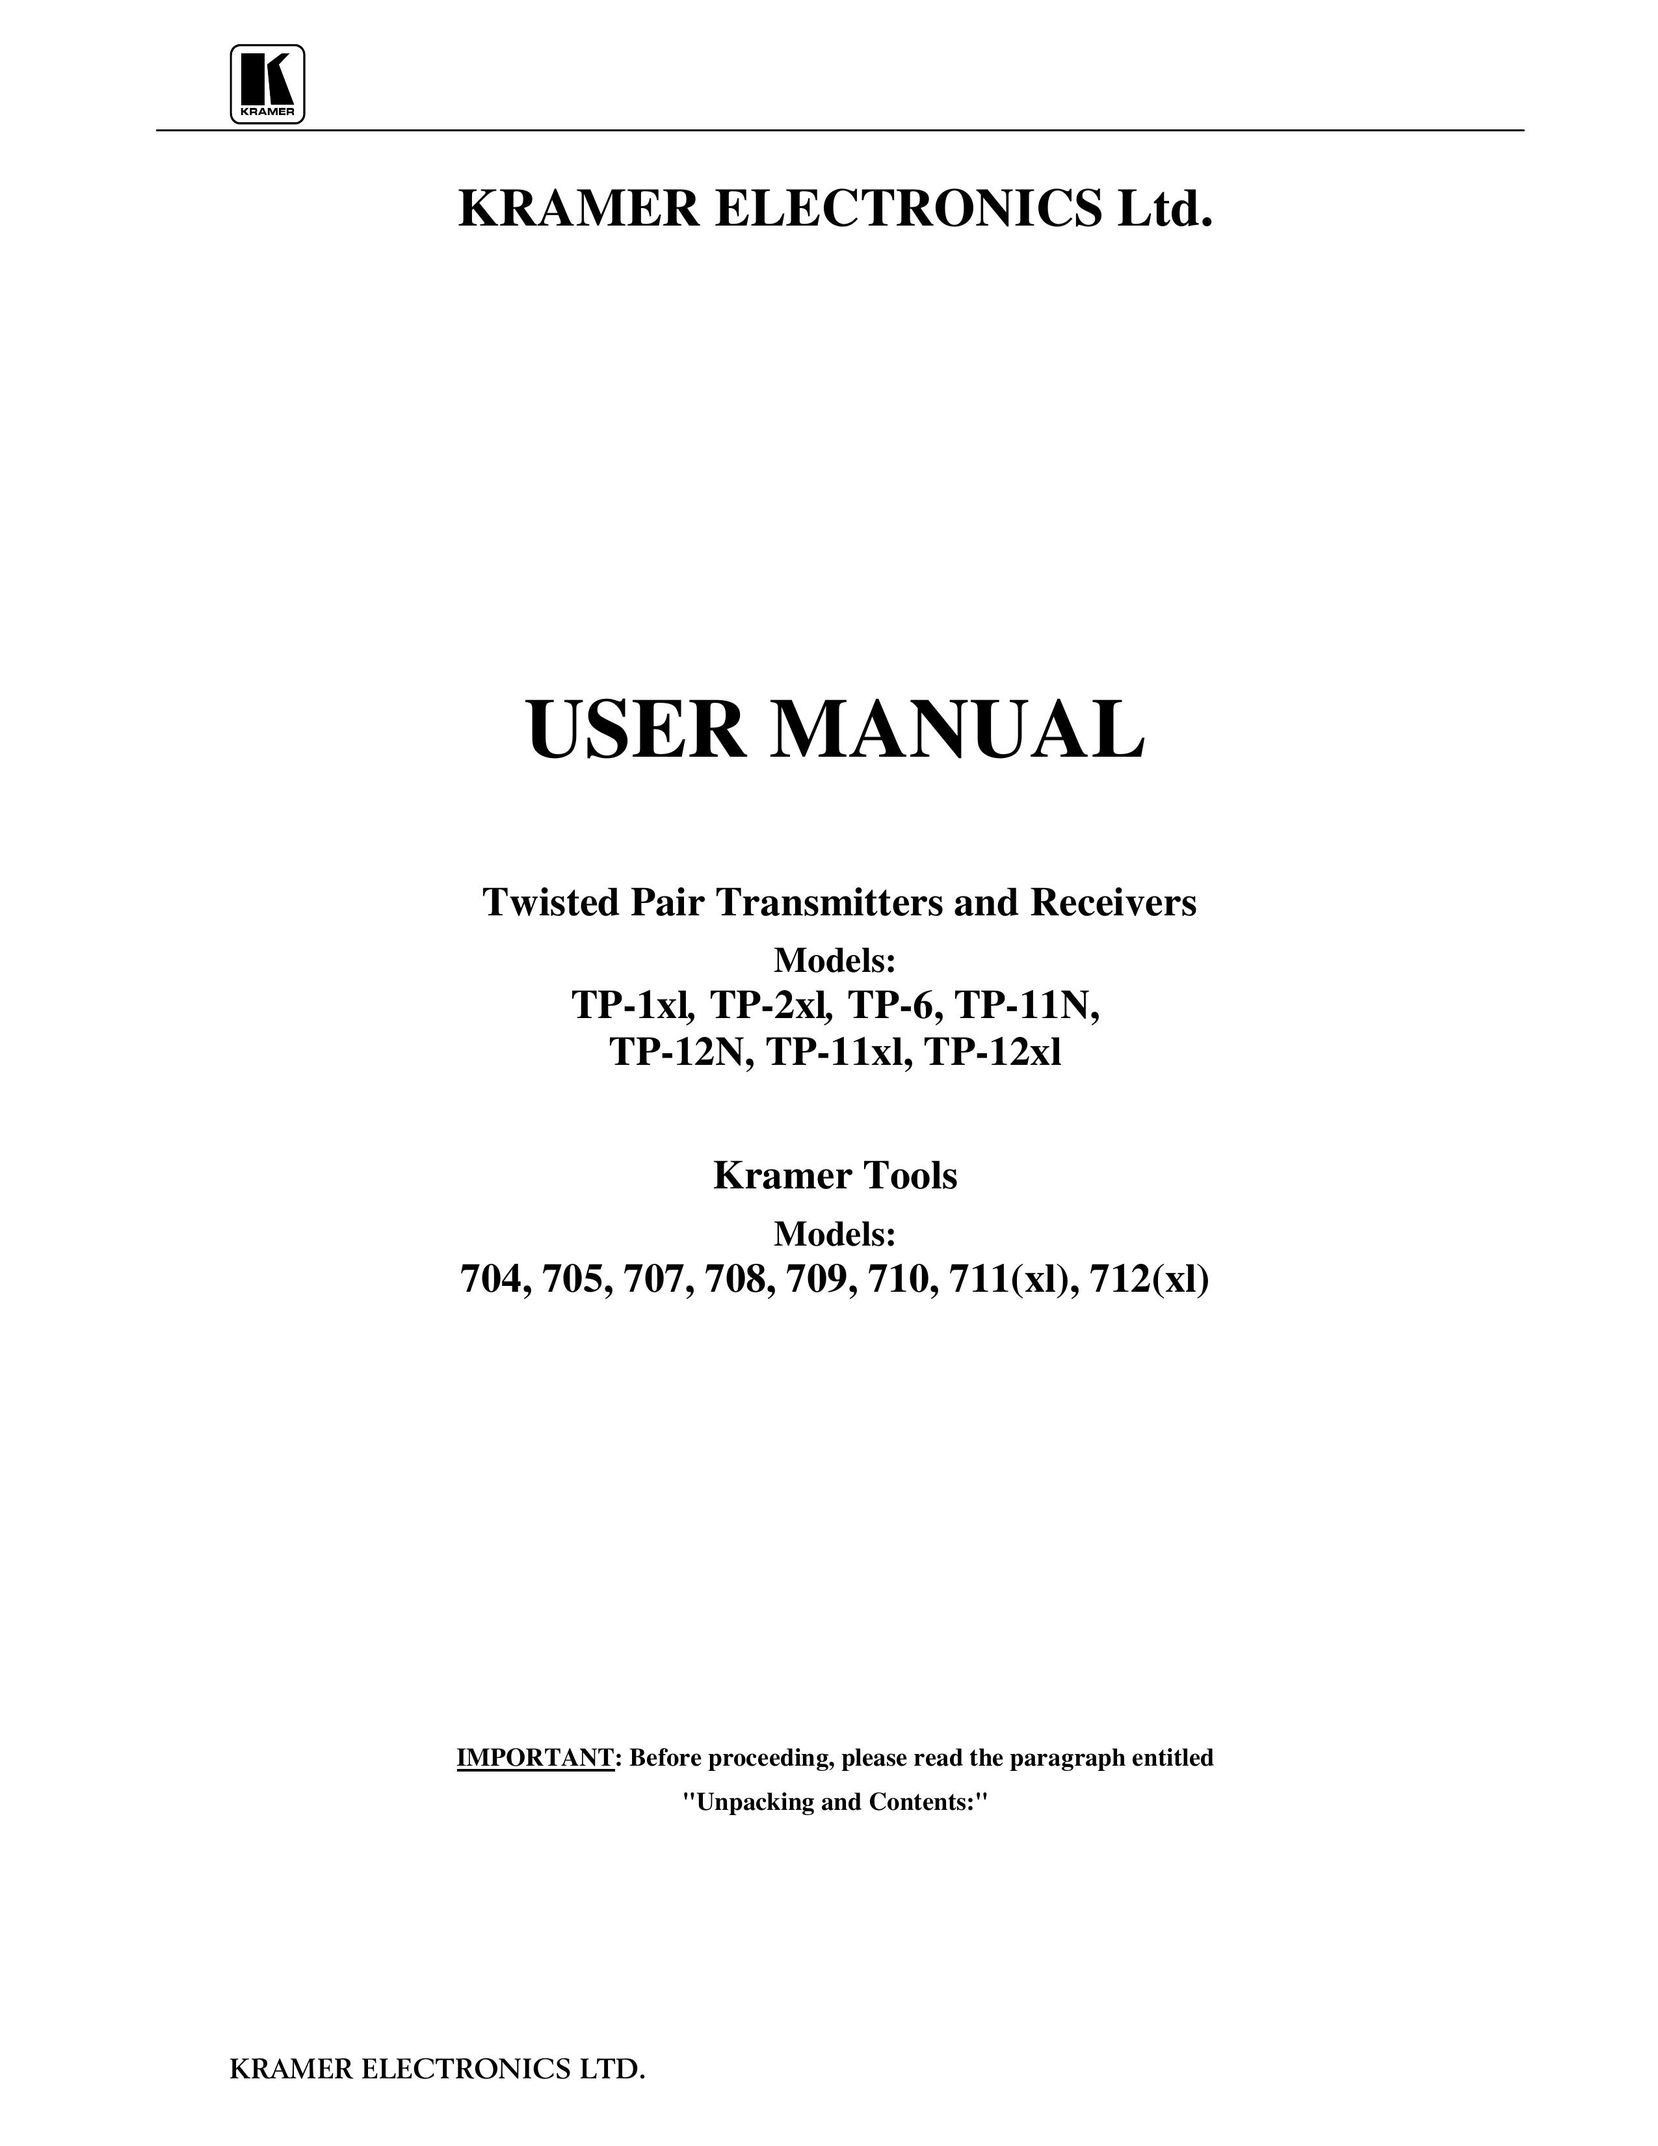 Kramer Electronics TP-1xl Satellite Radio User Manual